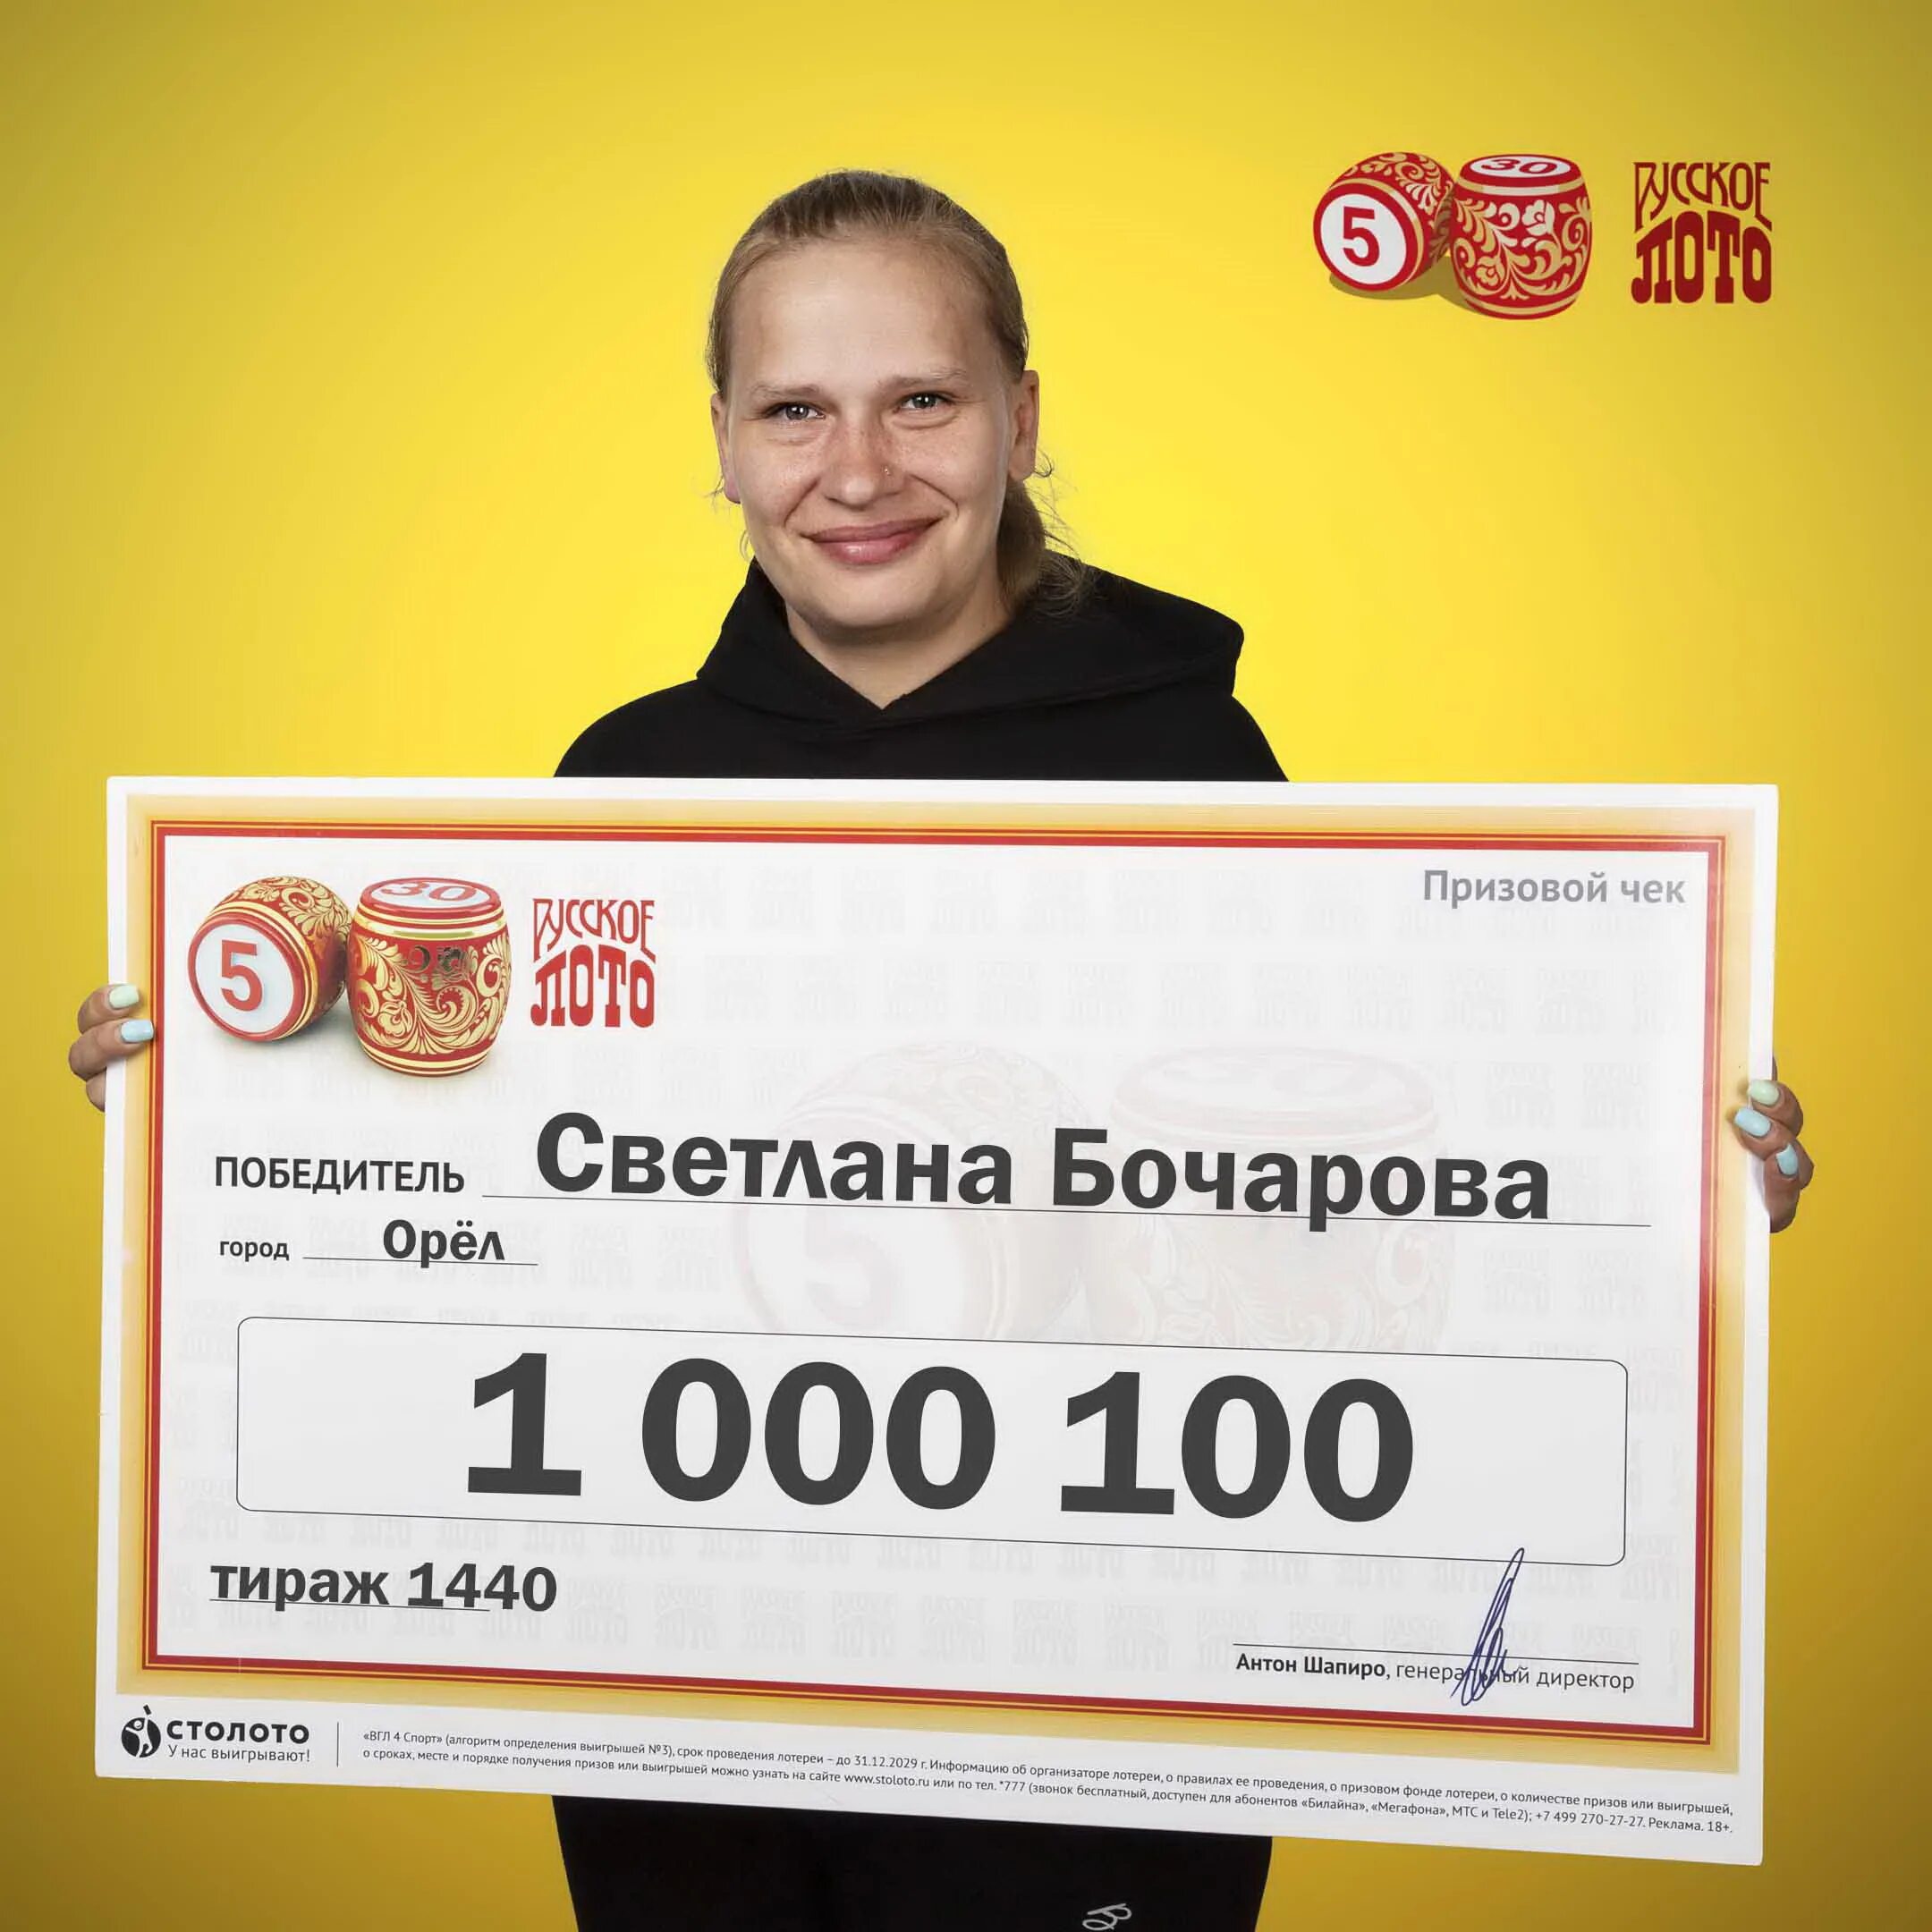 Выигрыш миллион рублей. Выигрыш в лотерею Столото. Выигрышный лотерейный билет. Победитель лотереи.